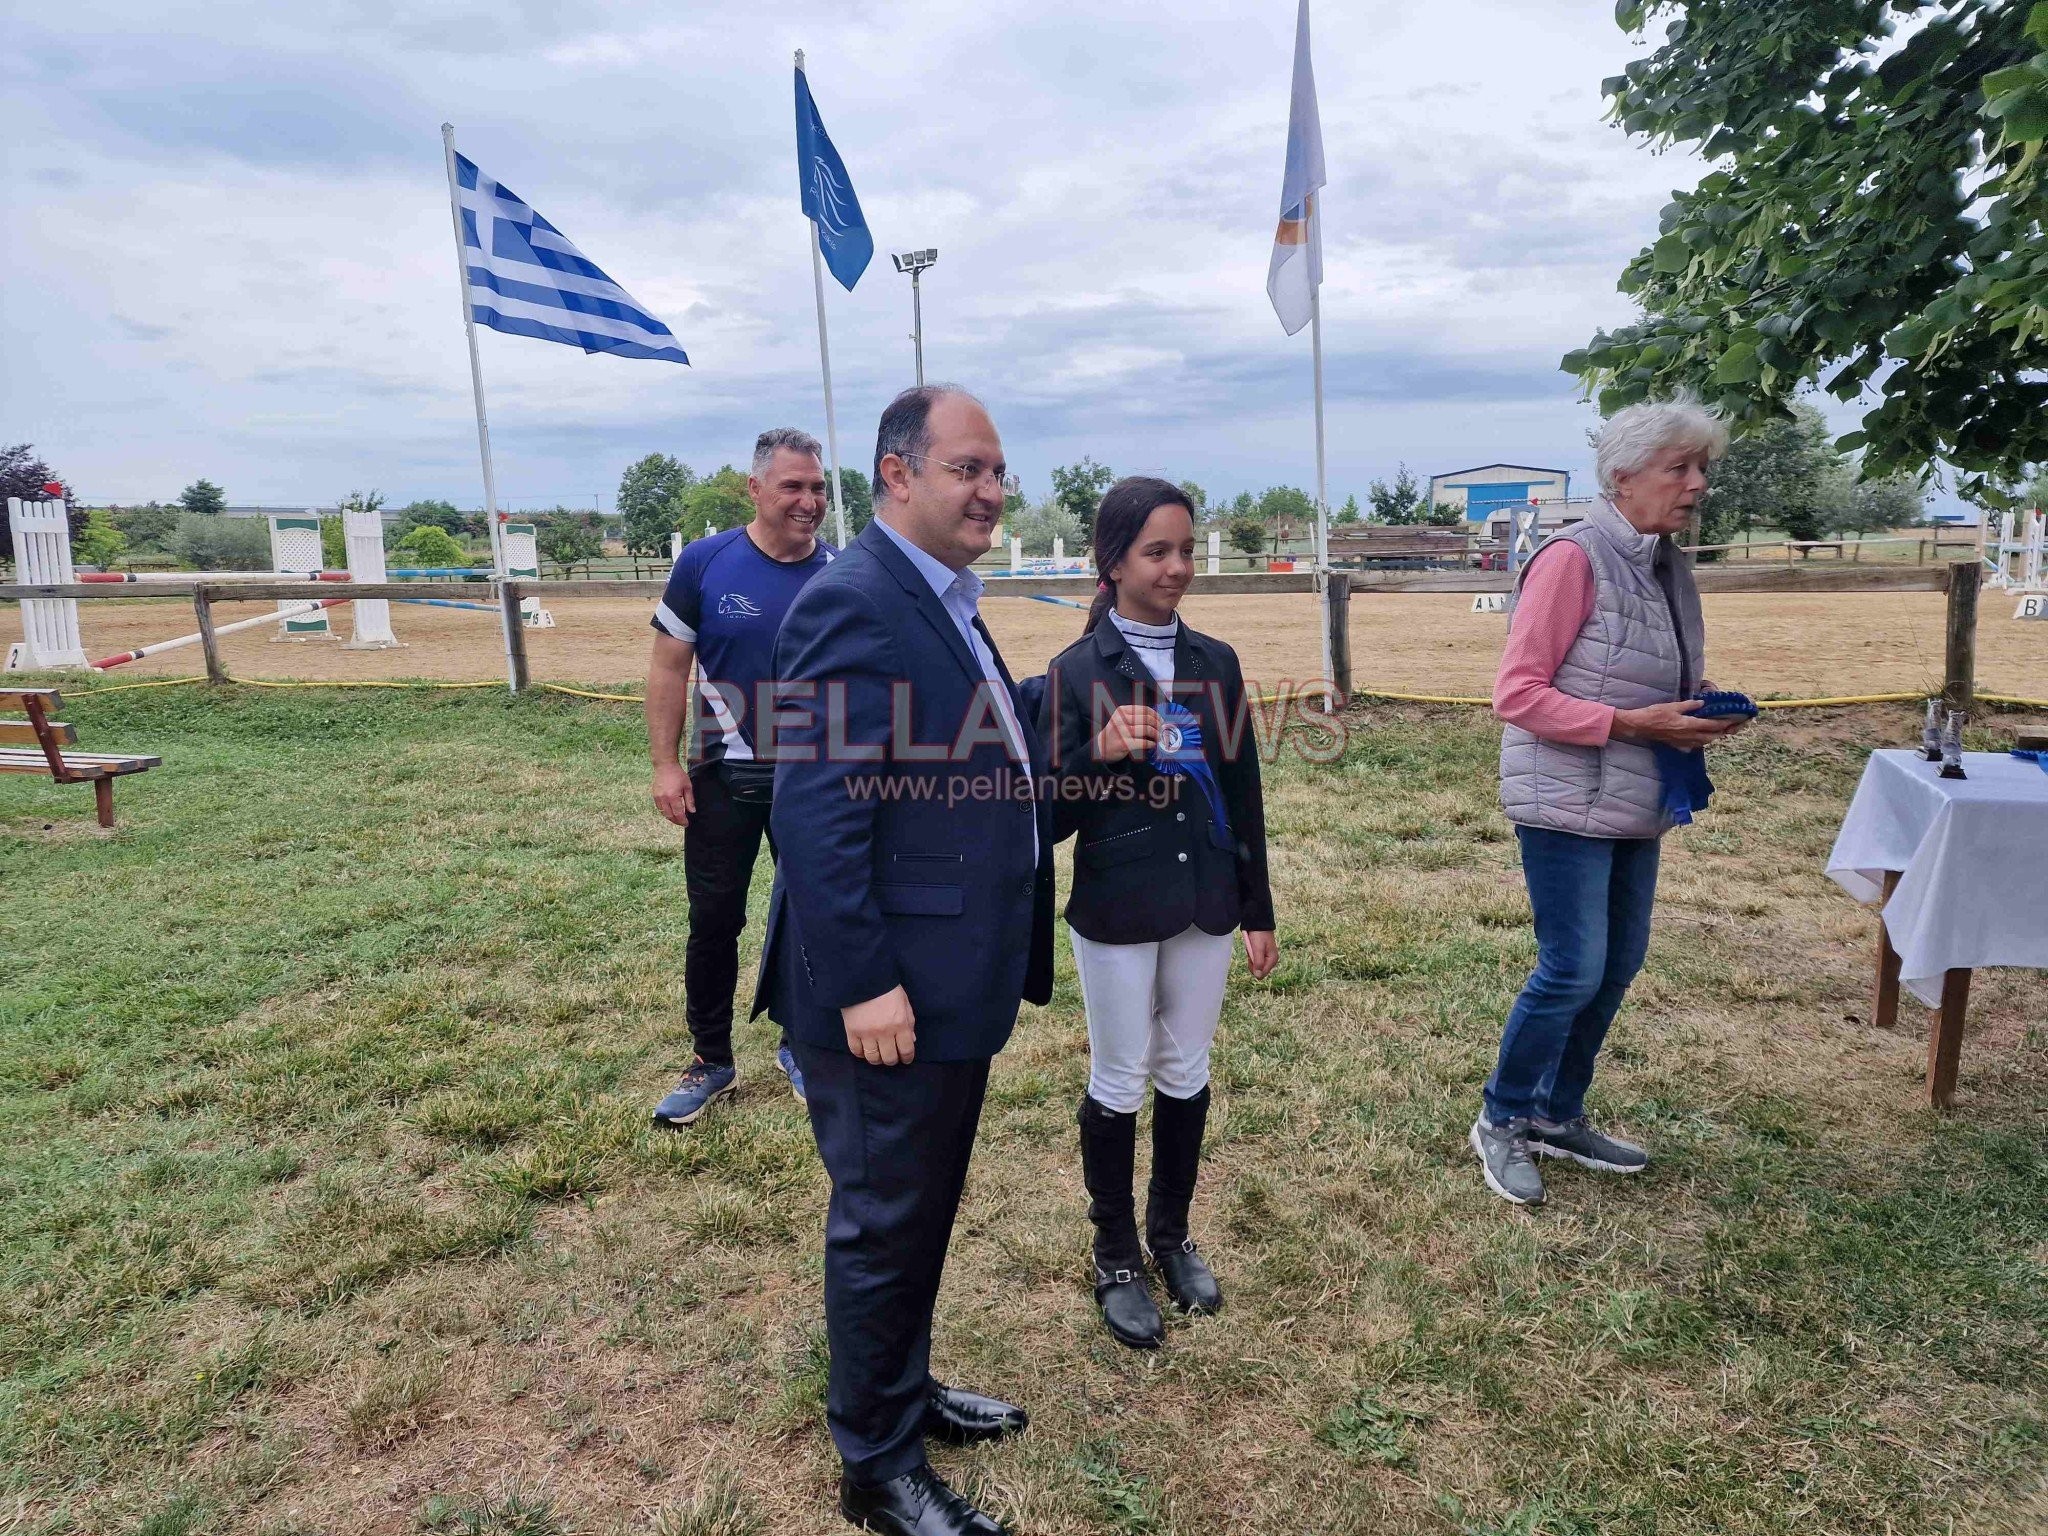 Ο Δήμαρχος Κιλκίς Κυριακίδης Δημήτριος: "οι αγώνες ιππασίας κοσμούν την πόλη του Κιλκίς και την ευρύτερη περιοχή"